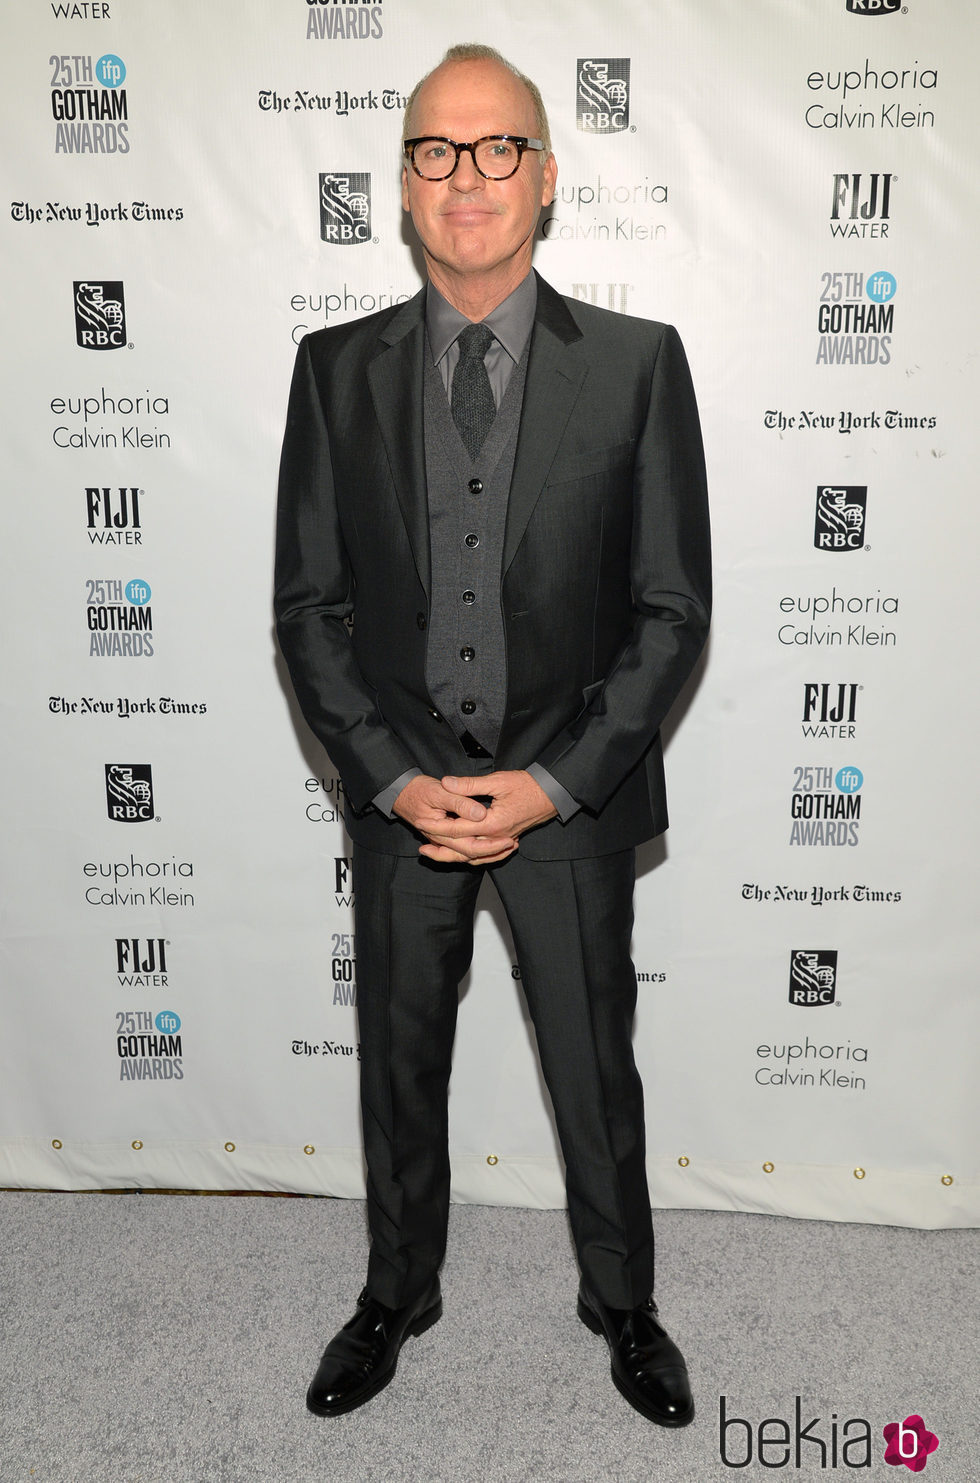 Michael Keaton en los Premios Gotham 2015